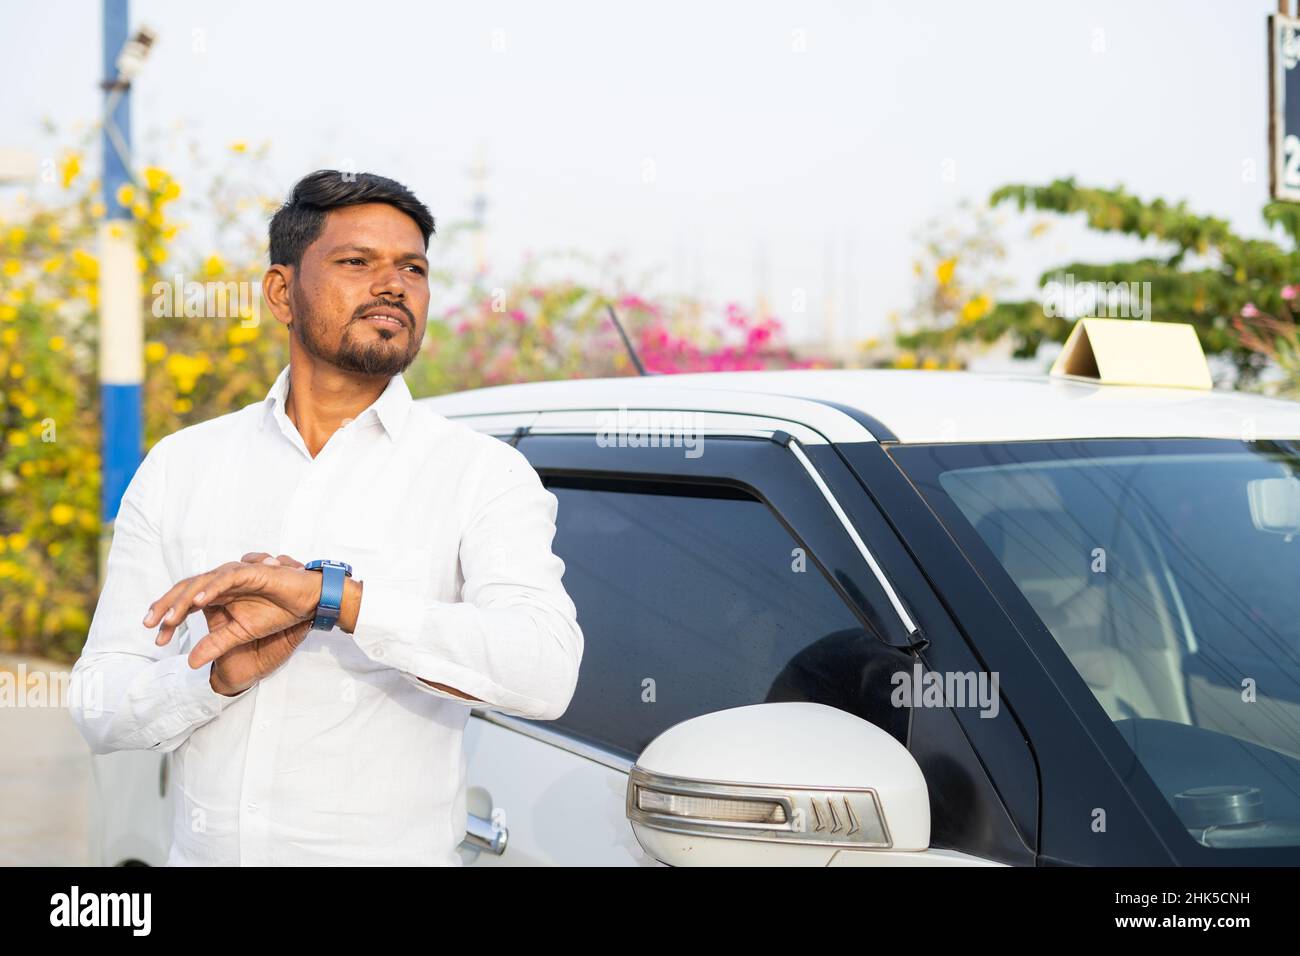 Inquiet chauffeur de taxi indien attendant le client devant la voiture - concept de service de réservation de taxi, style de vie de travail stressant et service de transport Banque D'Images